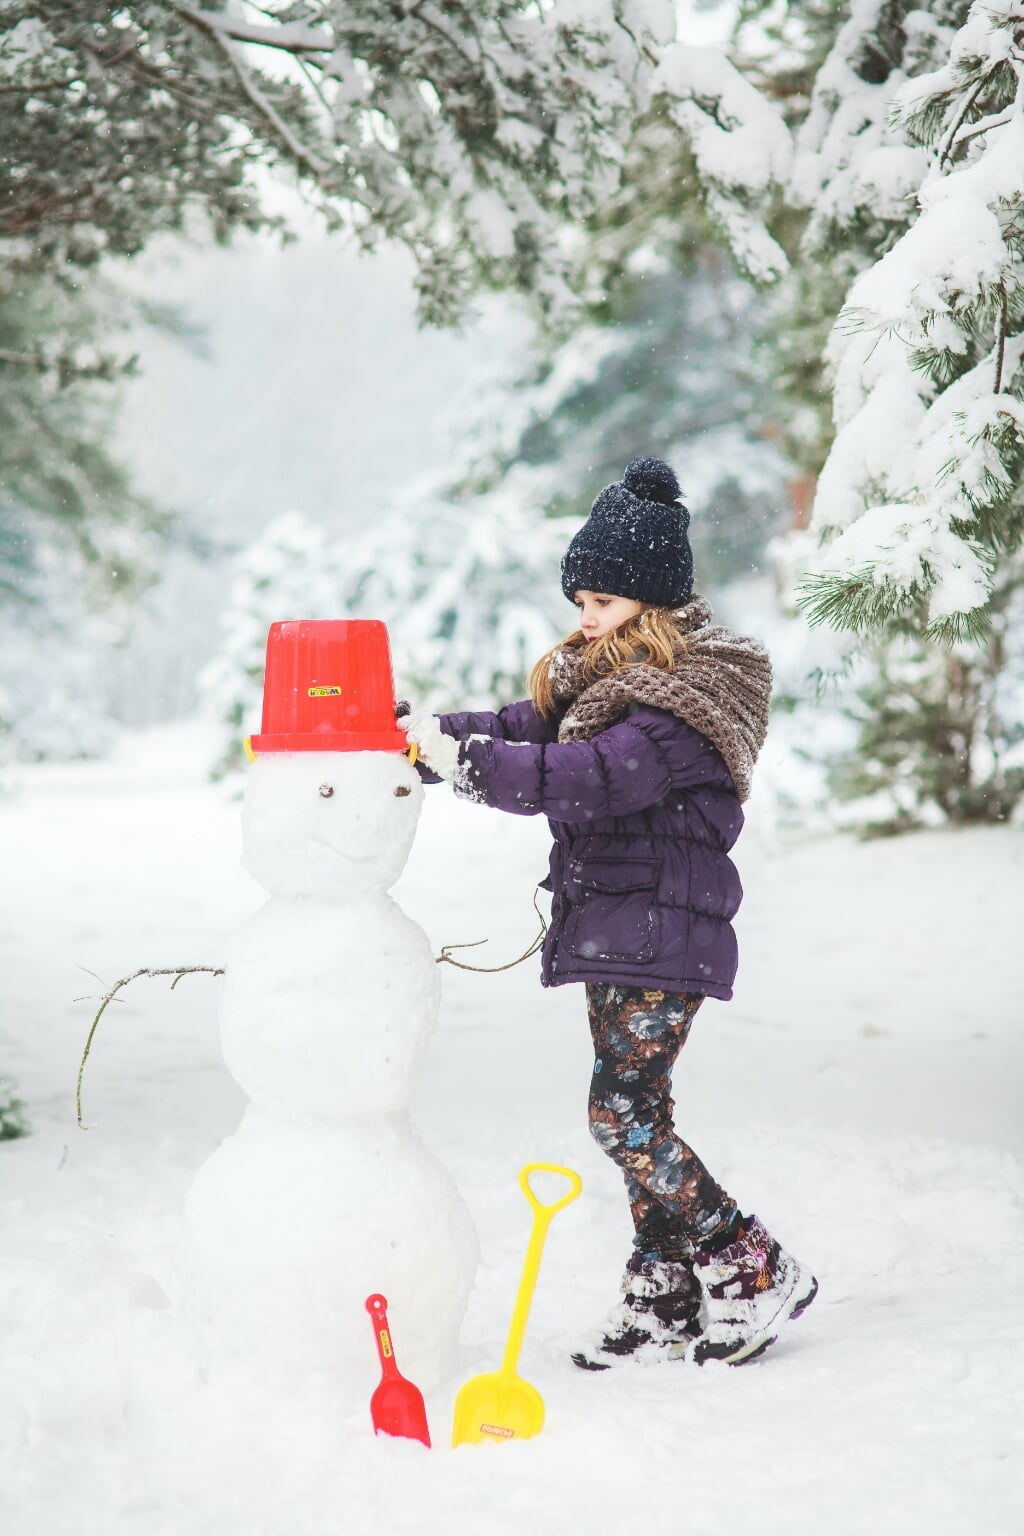 Kunnen we dit jaar een sneeuwpop maken?